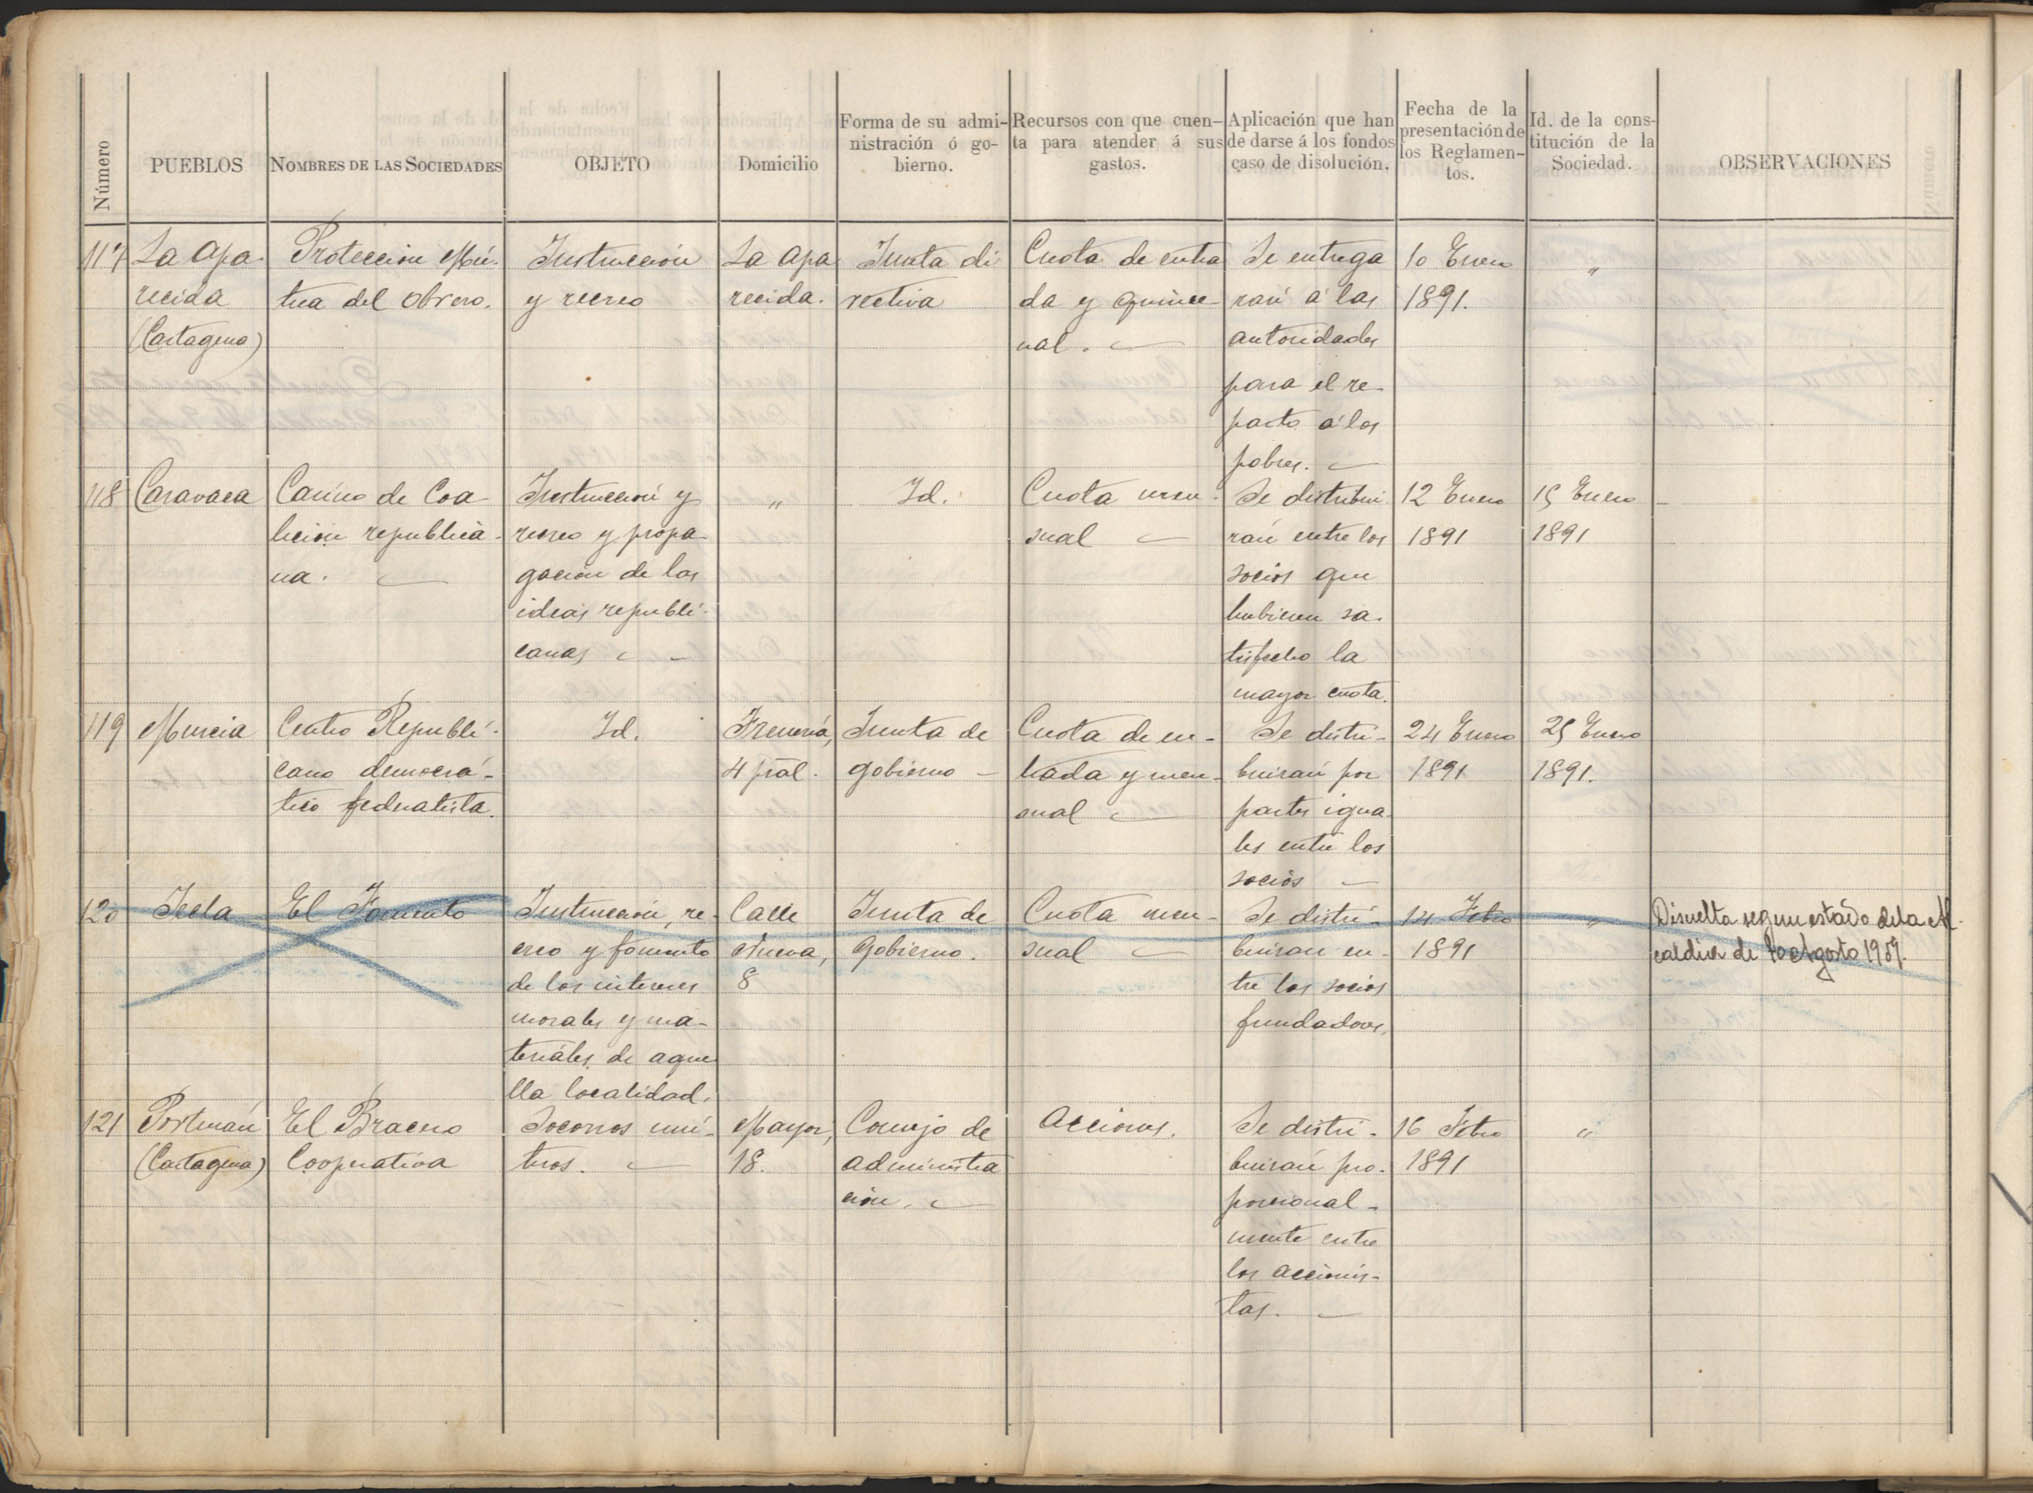 Registro de Asociaciones: nº 101-150. Años 1890-1891.